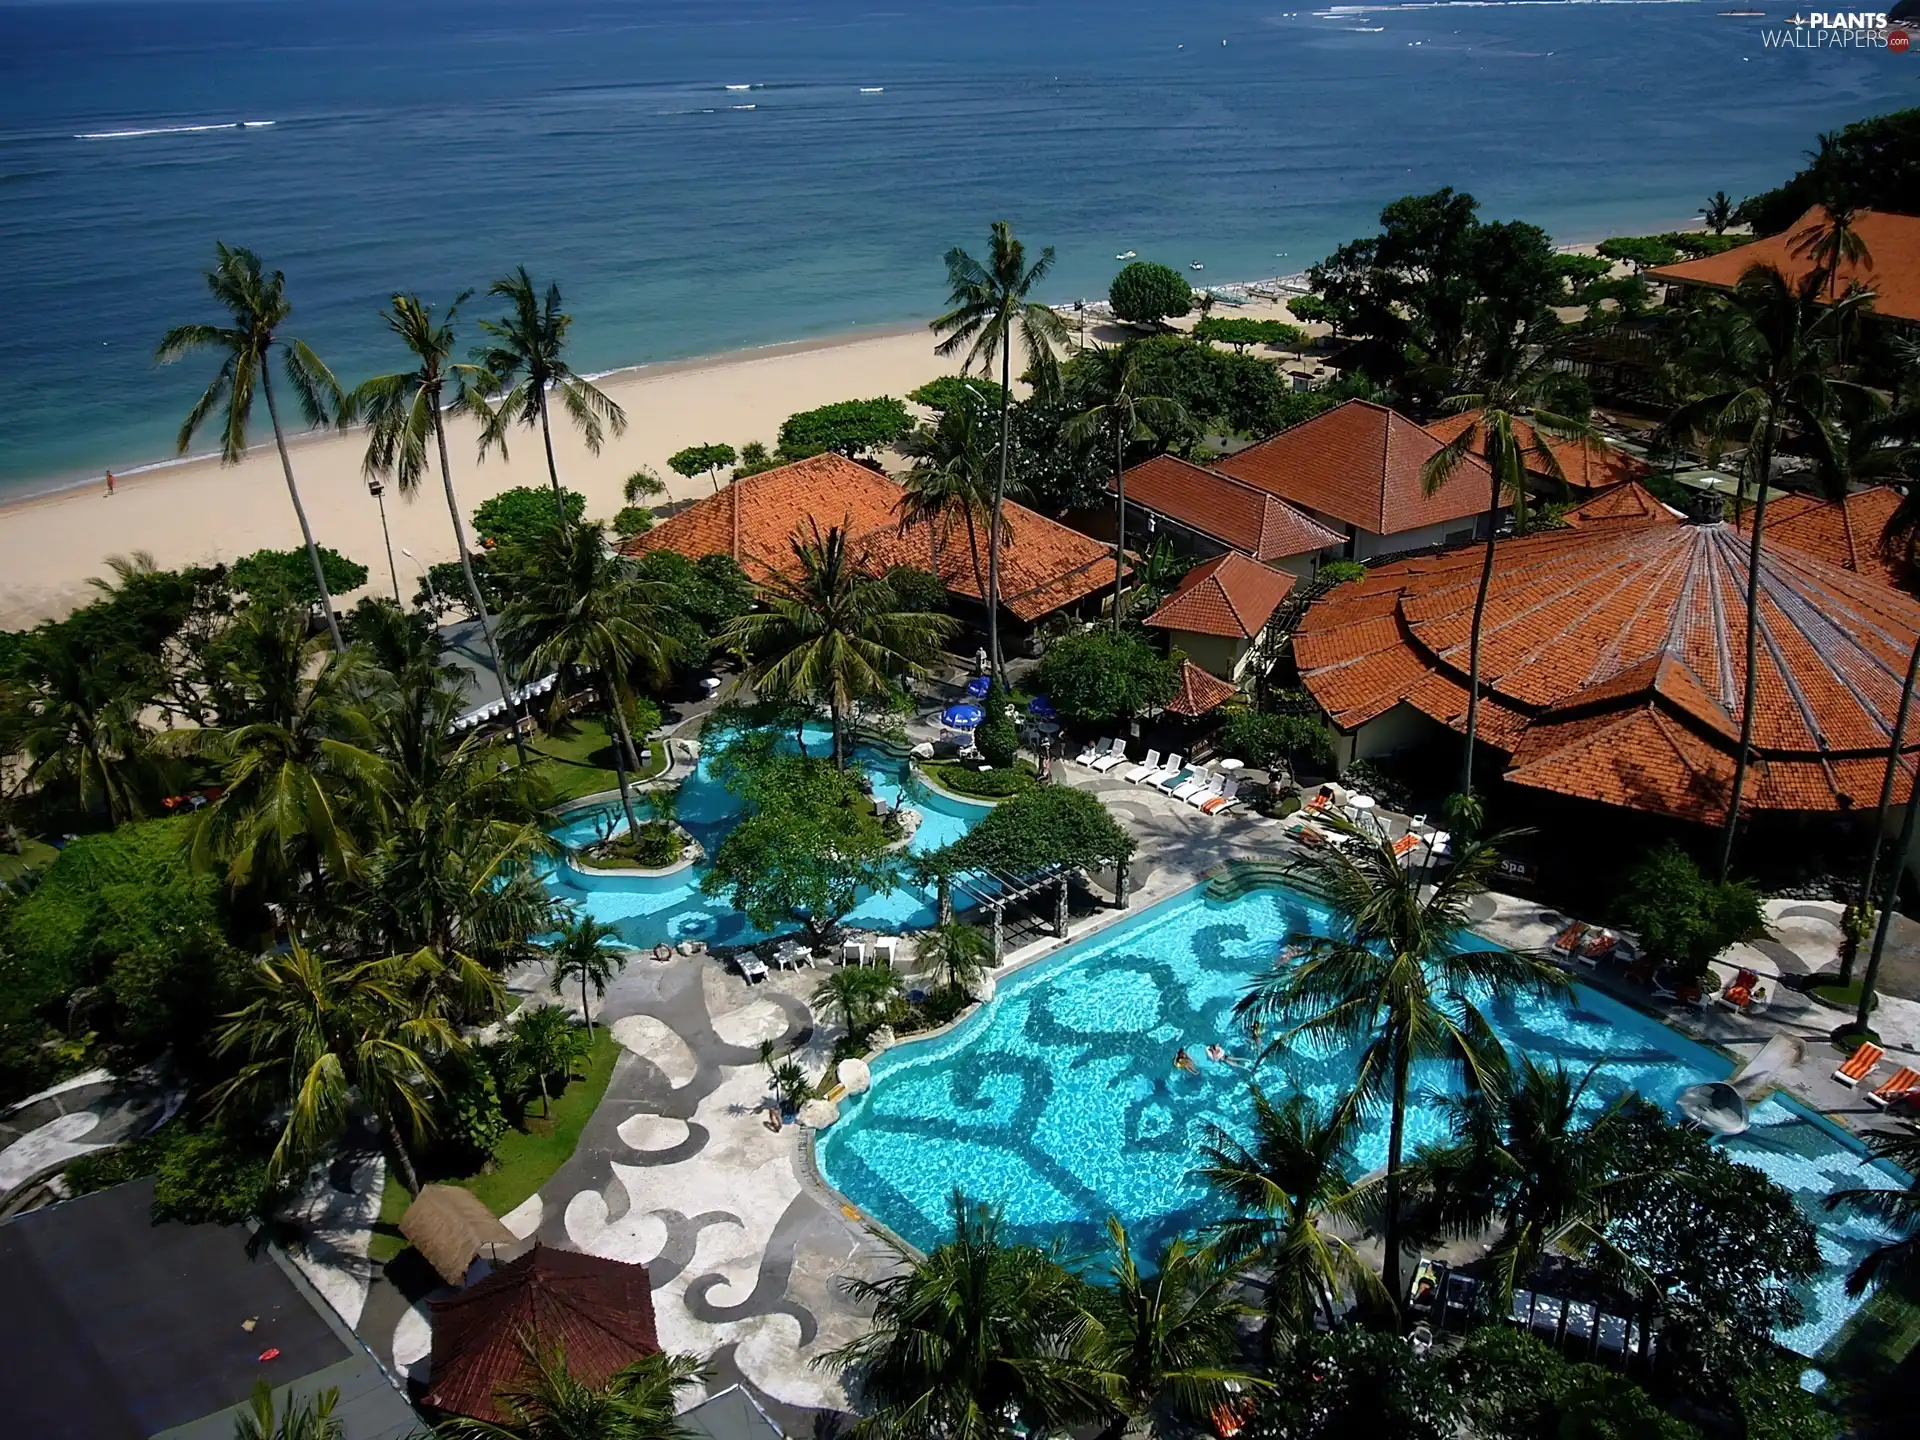 Hotel hall, Palms, sea, Pool